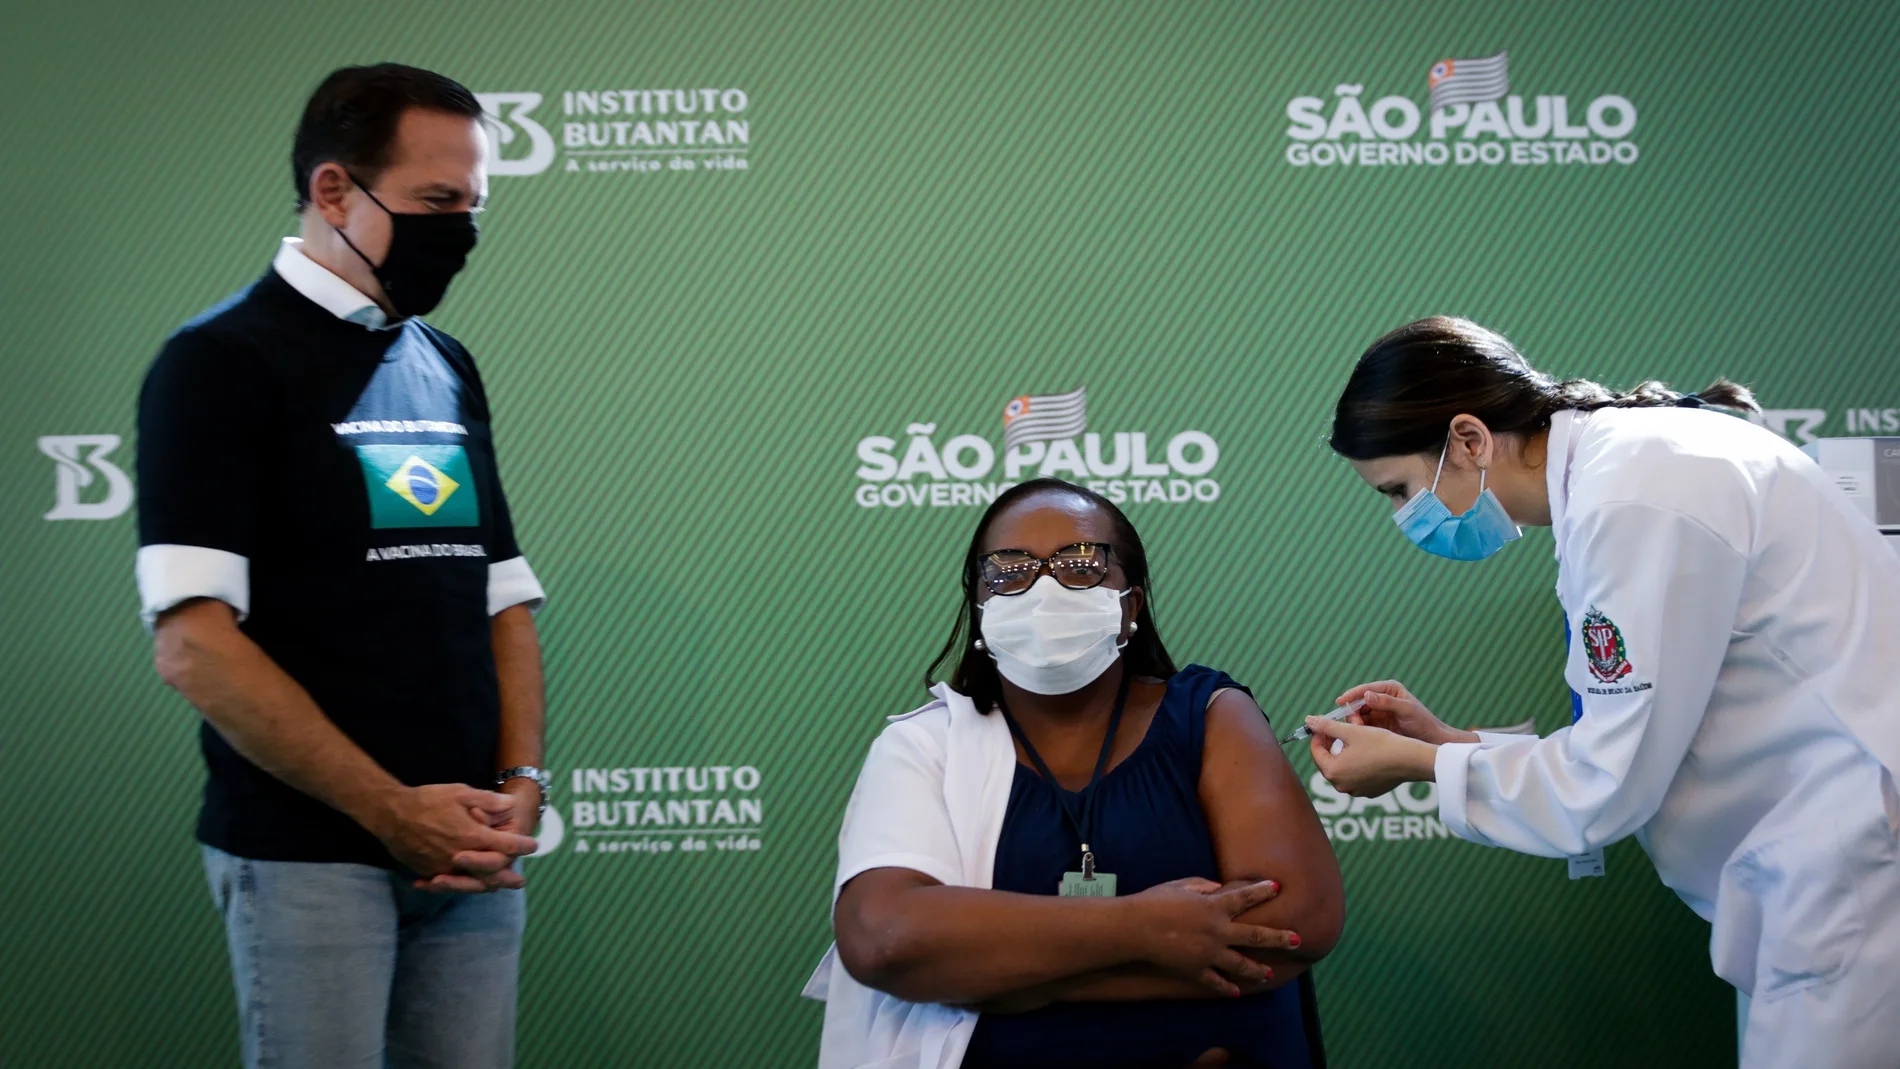 AME9923. SAO PAULO (BRASIL), 17/01/2021.- Mônica Calazans (c), enfermera del Hospital las Clínicas de la capital paulista recibe la vacuna contra la covid-19 en presencia del gobernador de Sao Paulo, Joao Doria (i), hoy, en Sao Paulo (Brasil). Brasil, uno de los países del mundo más afectados por la pandemia del coronavirus, aplicó este domingo en Sao Paulo la primera dosis de la vacuna contra la covid-19 a la enfermera de 54 años, en momentos en los que el gigante latinoamericano enfrenta una segunda ola de la enfermedad. La primera dosis de la vacuna desarrollada por el laboratorio chino Sinovac y el Instituto brasileño Butantan fue aplicada tan solo minutos después de la aprobación de su uso de emergencia por parte de la Agencia Nacional de Vigilancia Sanitaria (Anvisa). EFE/ Fernando Bizerra Jr